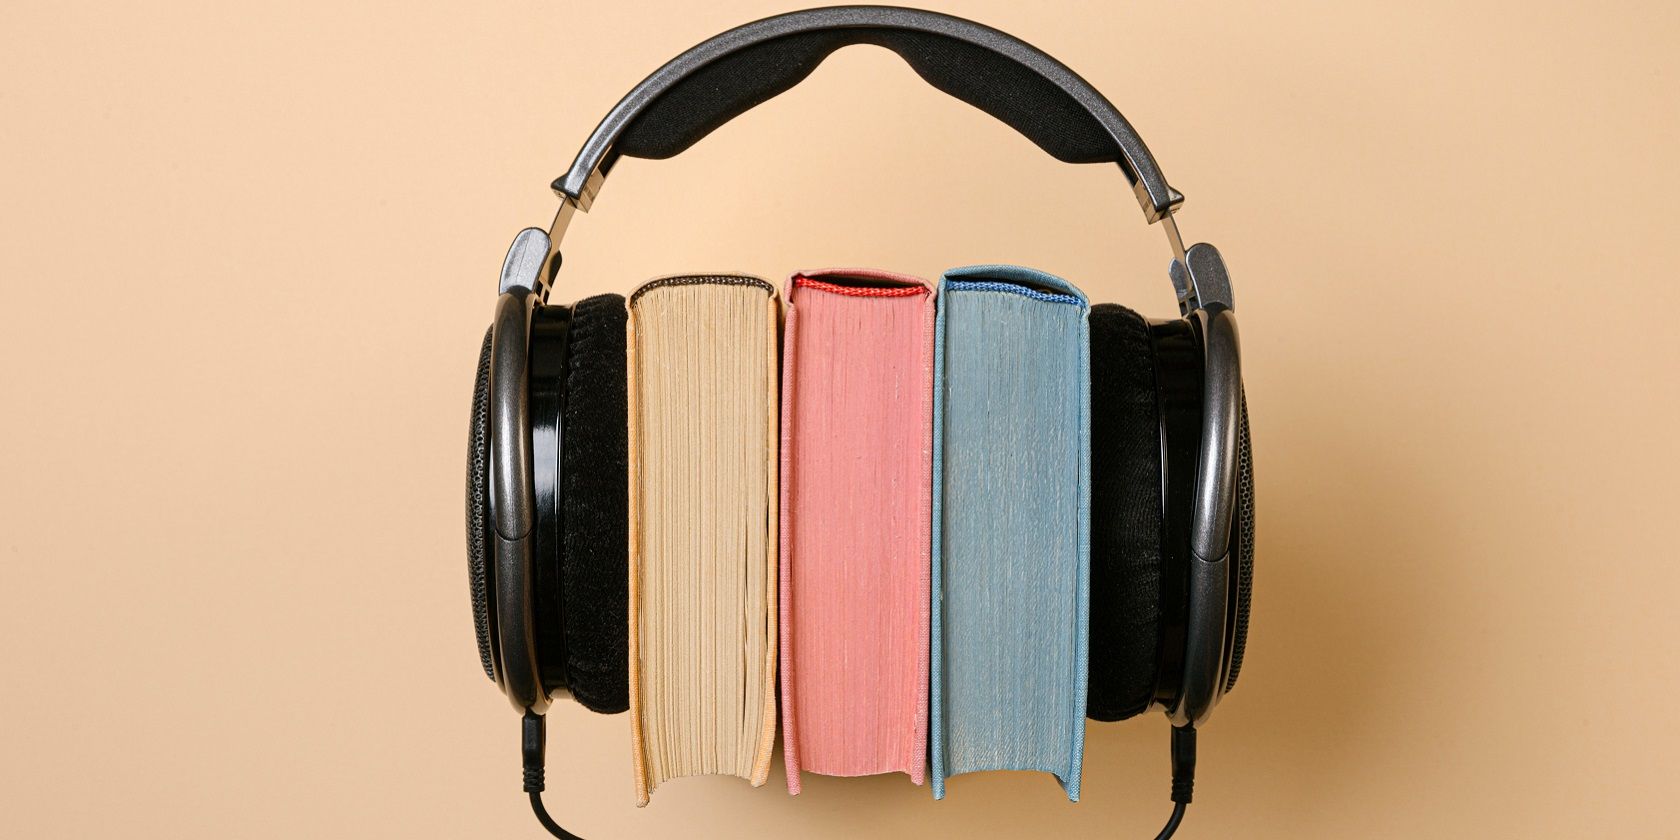 Physical books vs audiobooks